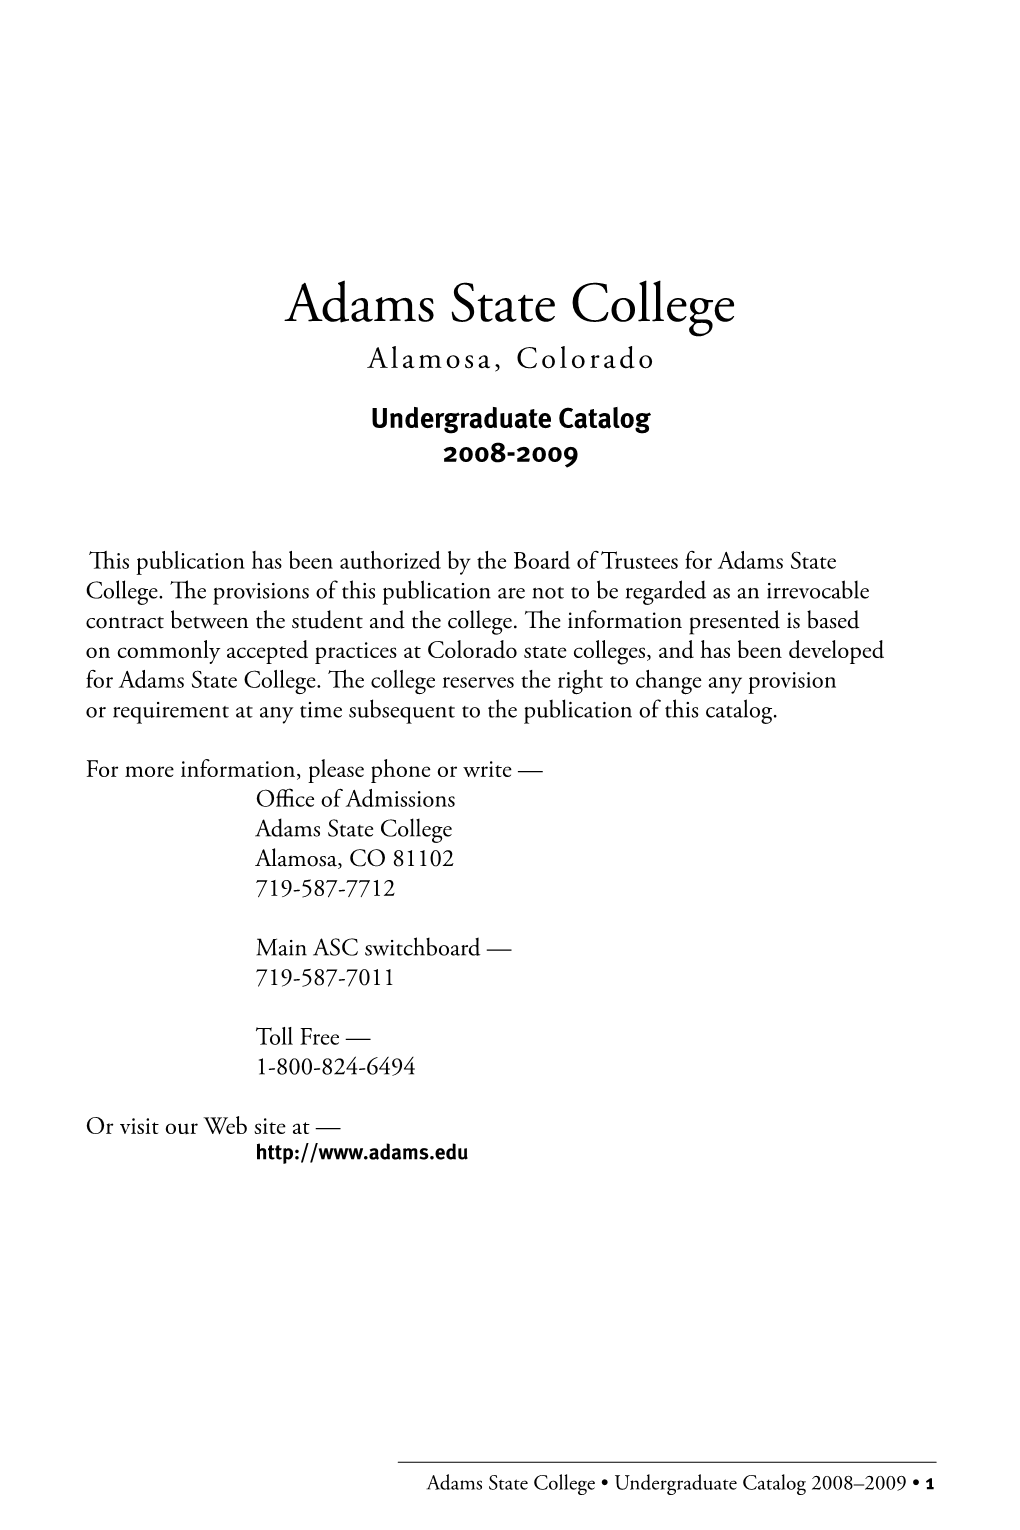 Adams State College Alamosa, Colorado Undergraduate Catalog 2008-2009